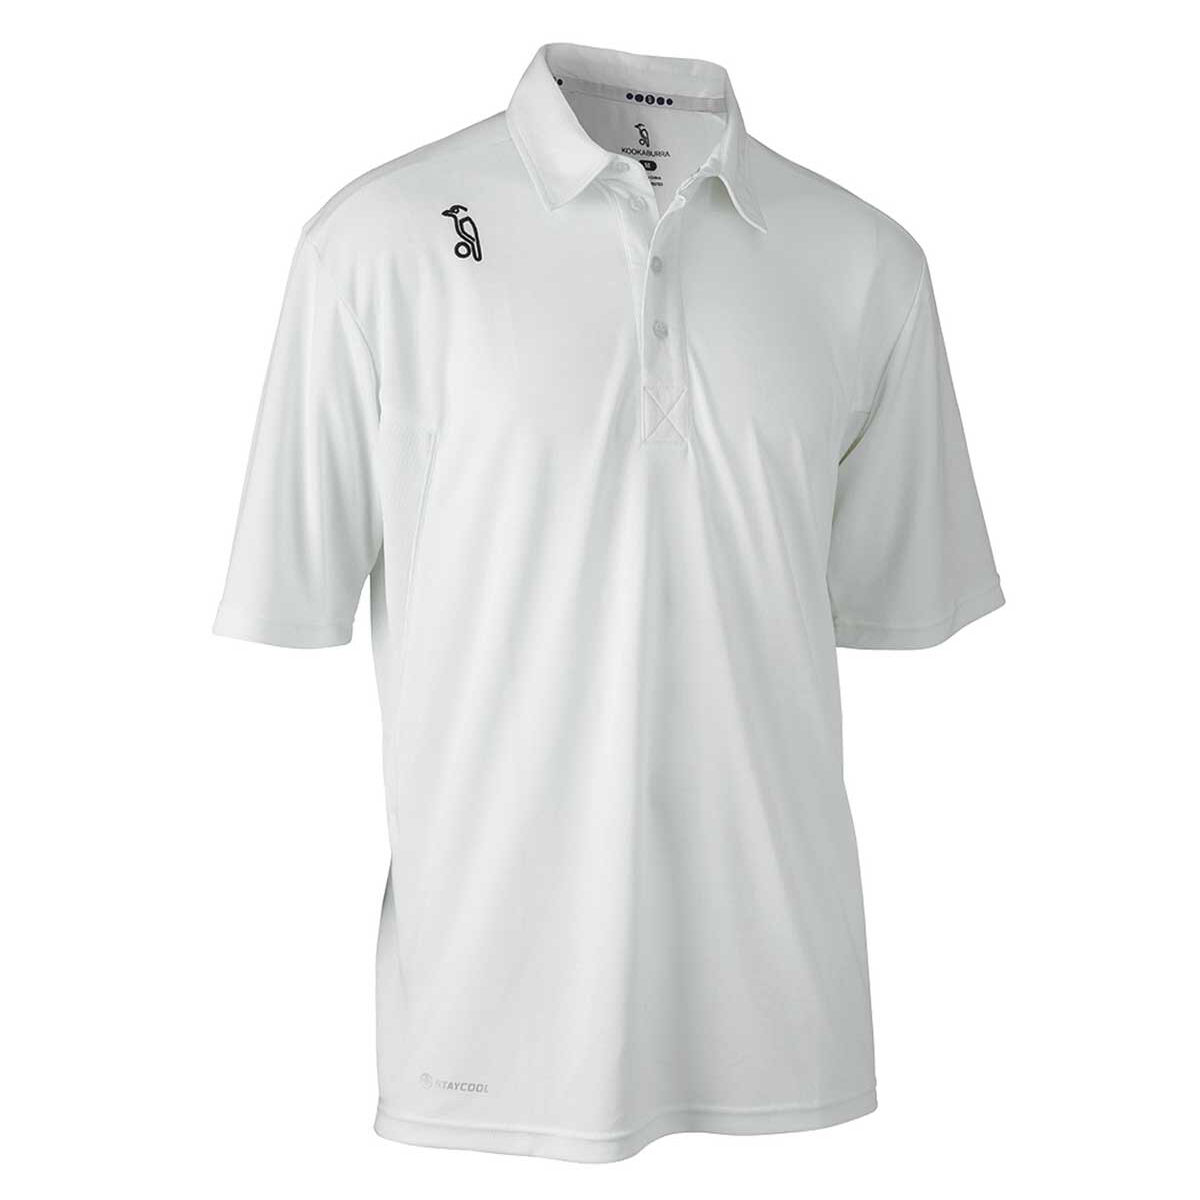 KOOKABURRA Cricket Predator Mid Sleeve Shirt 